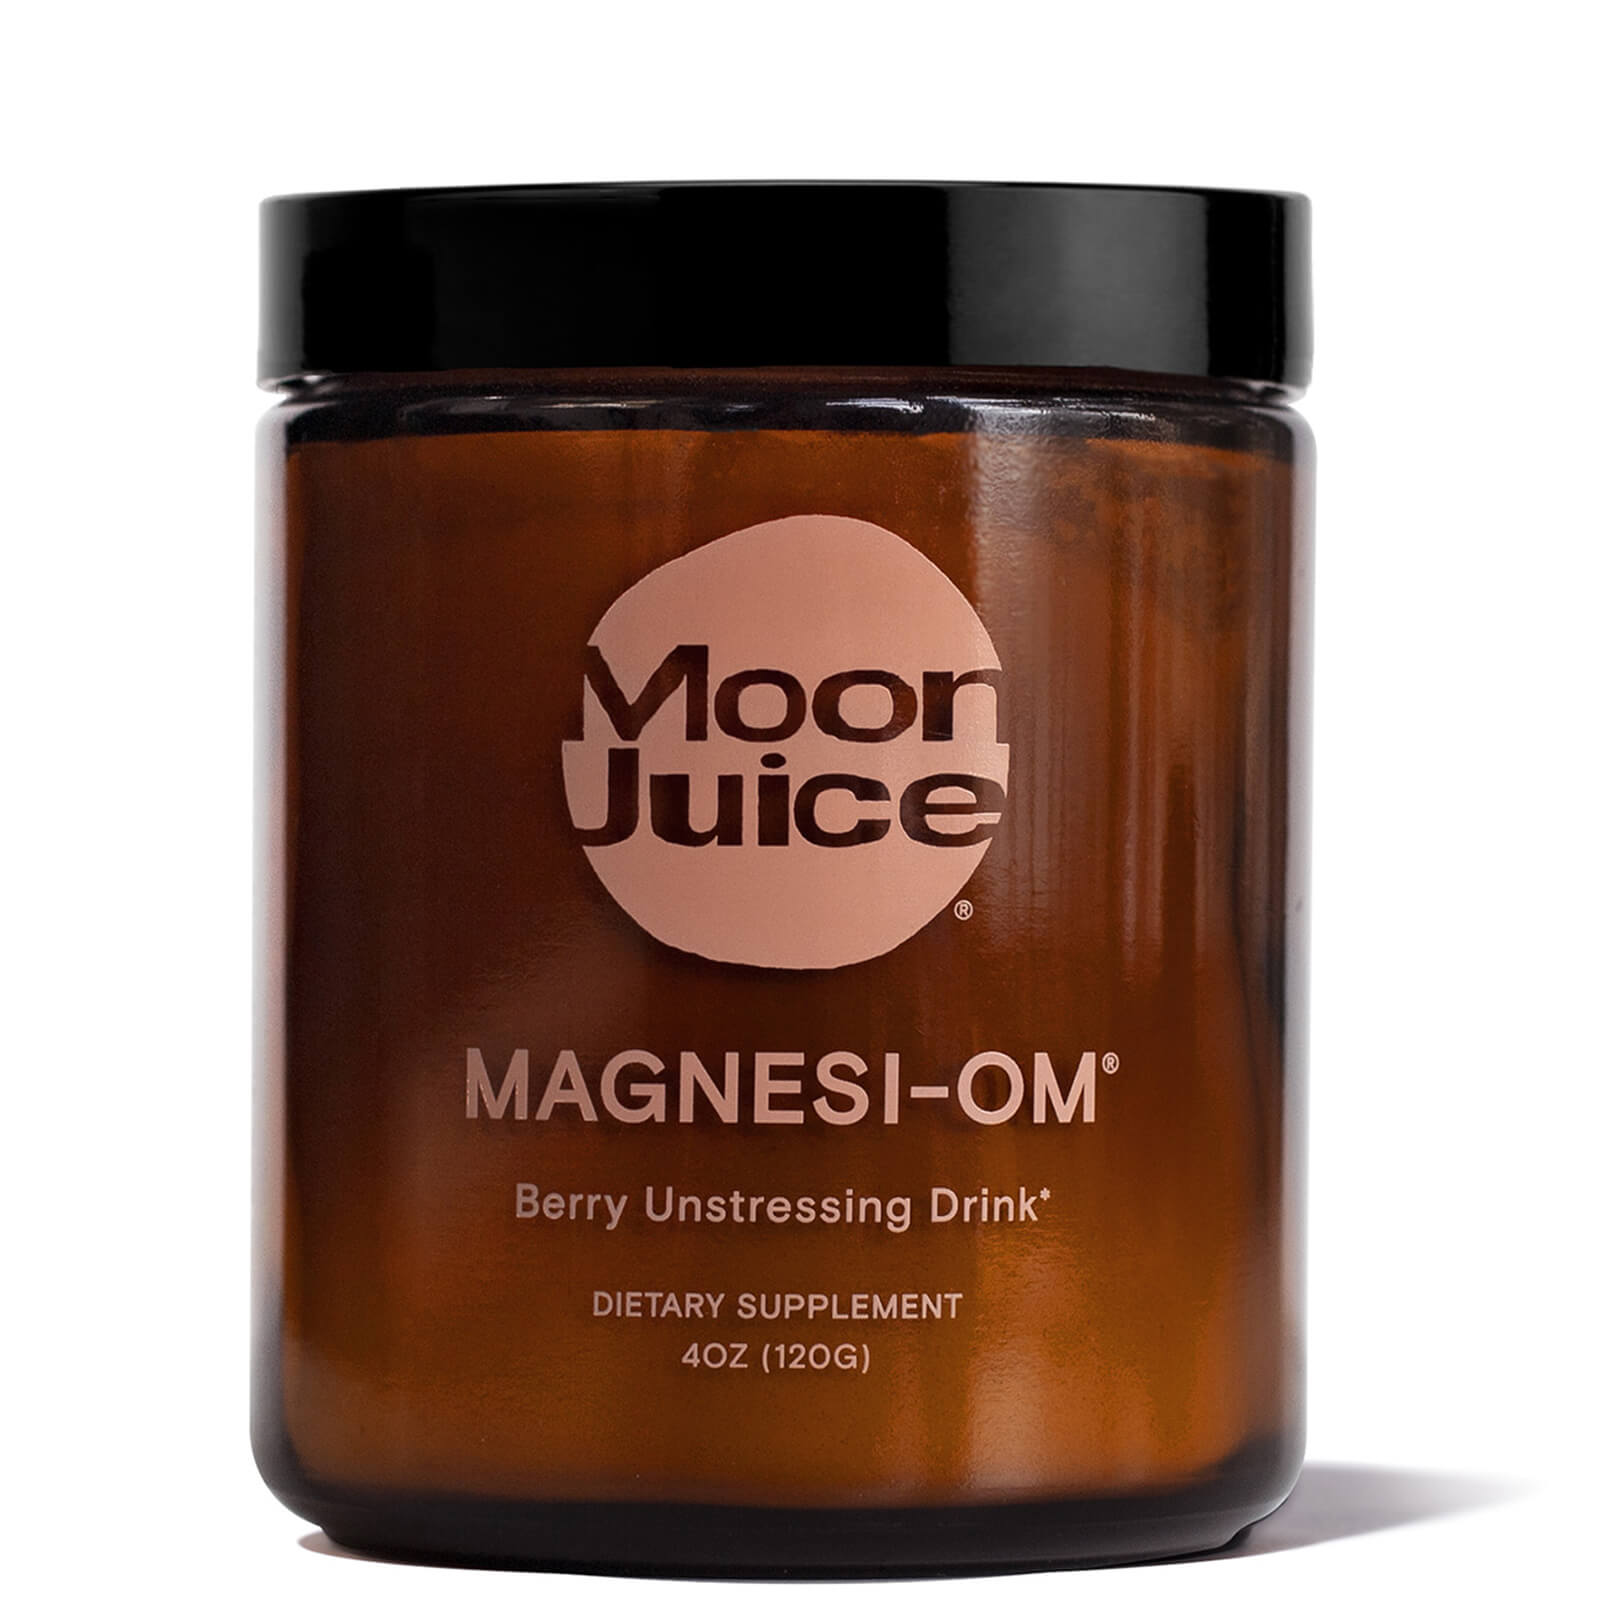 Moon Juice Magnesi-Om 4 oz lookfantastic.com imagine